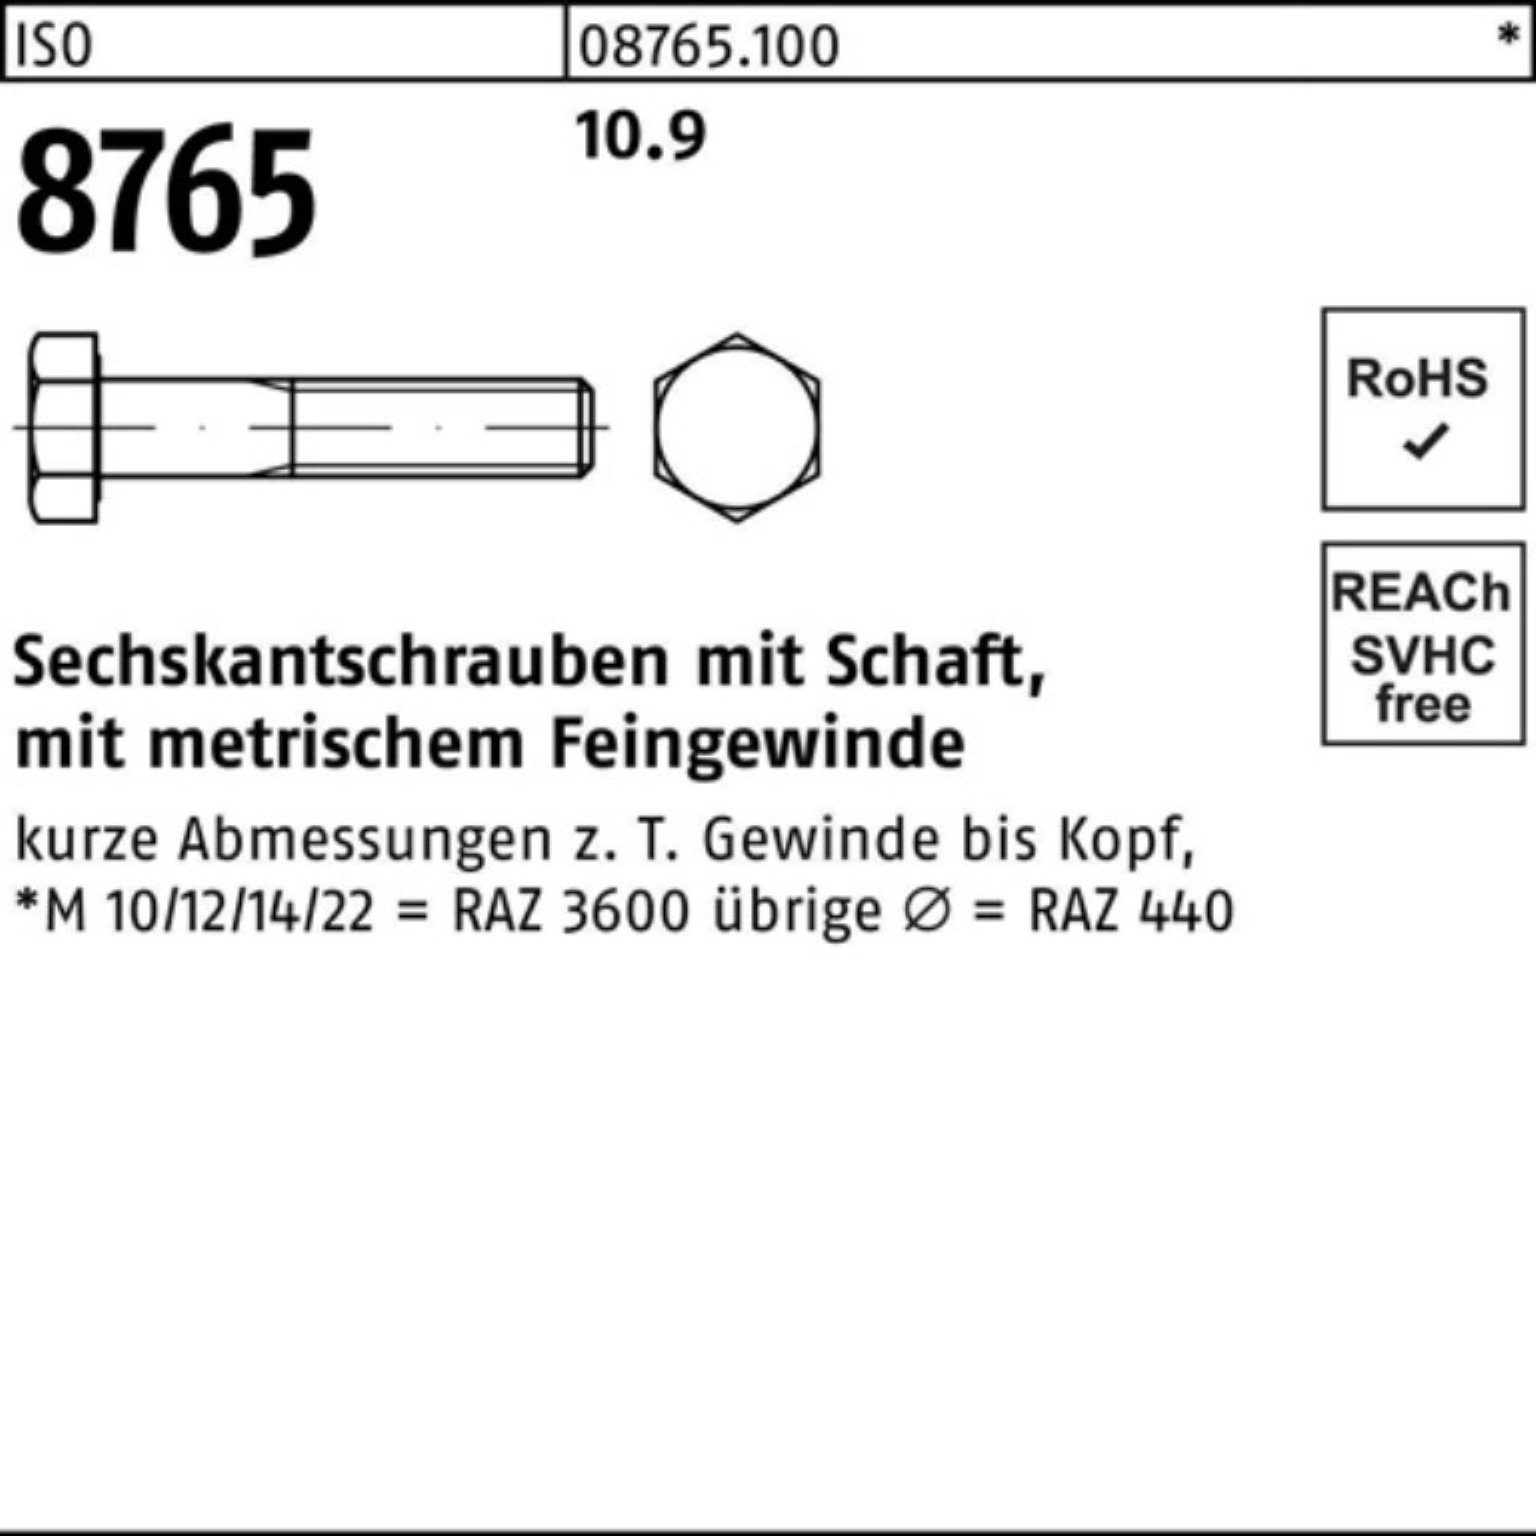 Reyher Sechskantschraube 100er 10.9 8765 M24x1,5x110 ISO 10 Stüc Schaft Sechskantschraube Pack